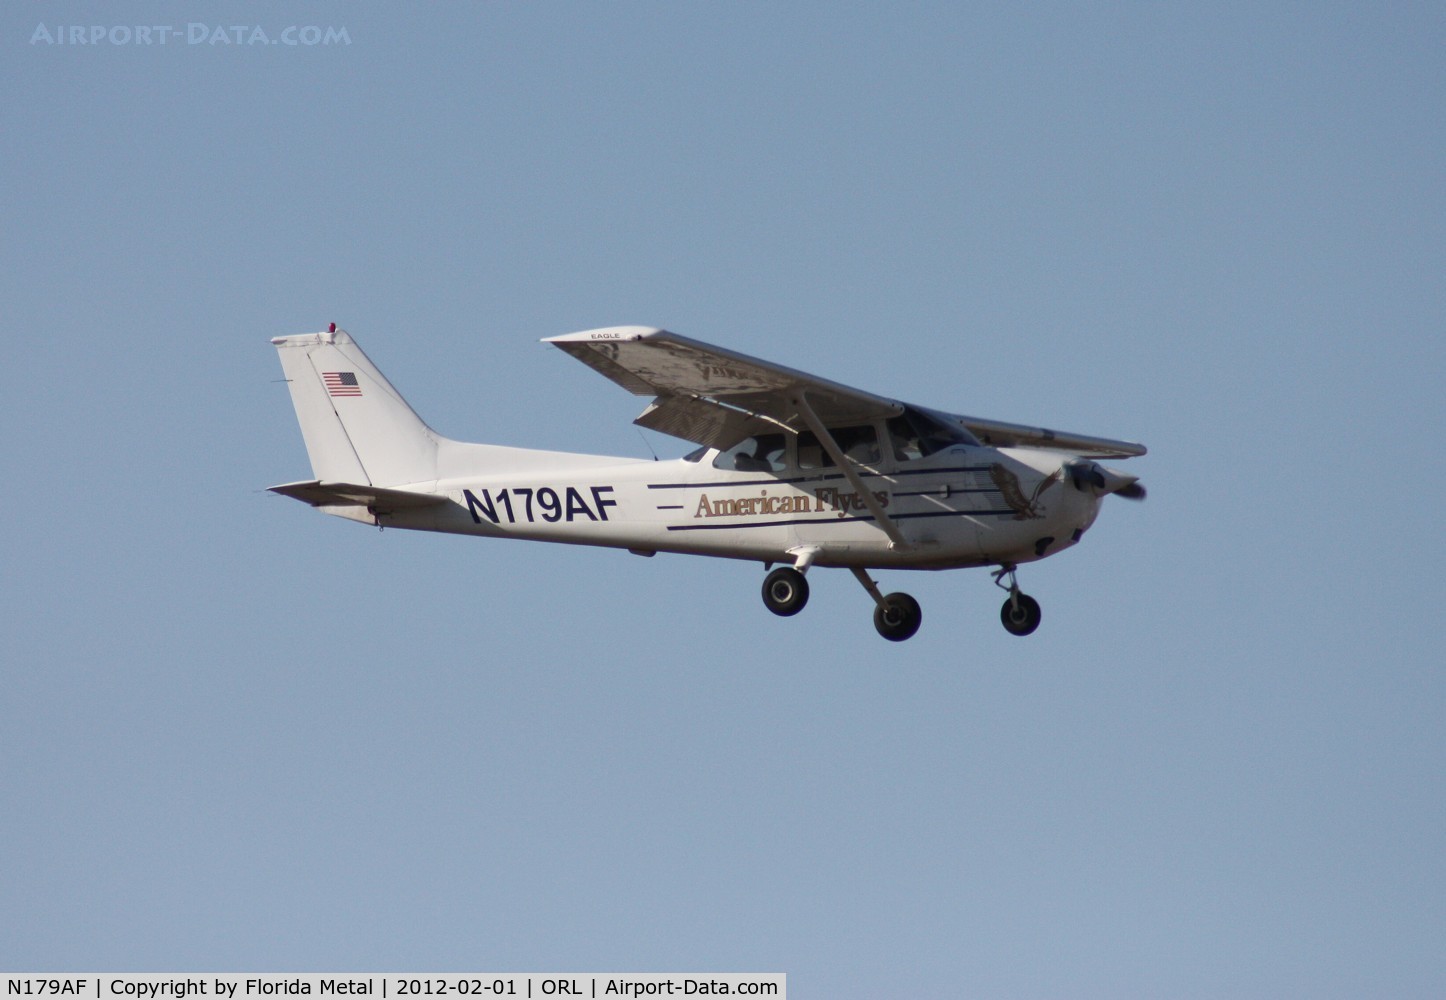 N179AF, 2003 Cessna 172R C/N 17281179, Cessna 172R